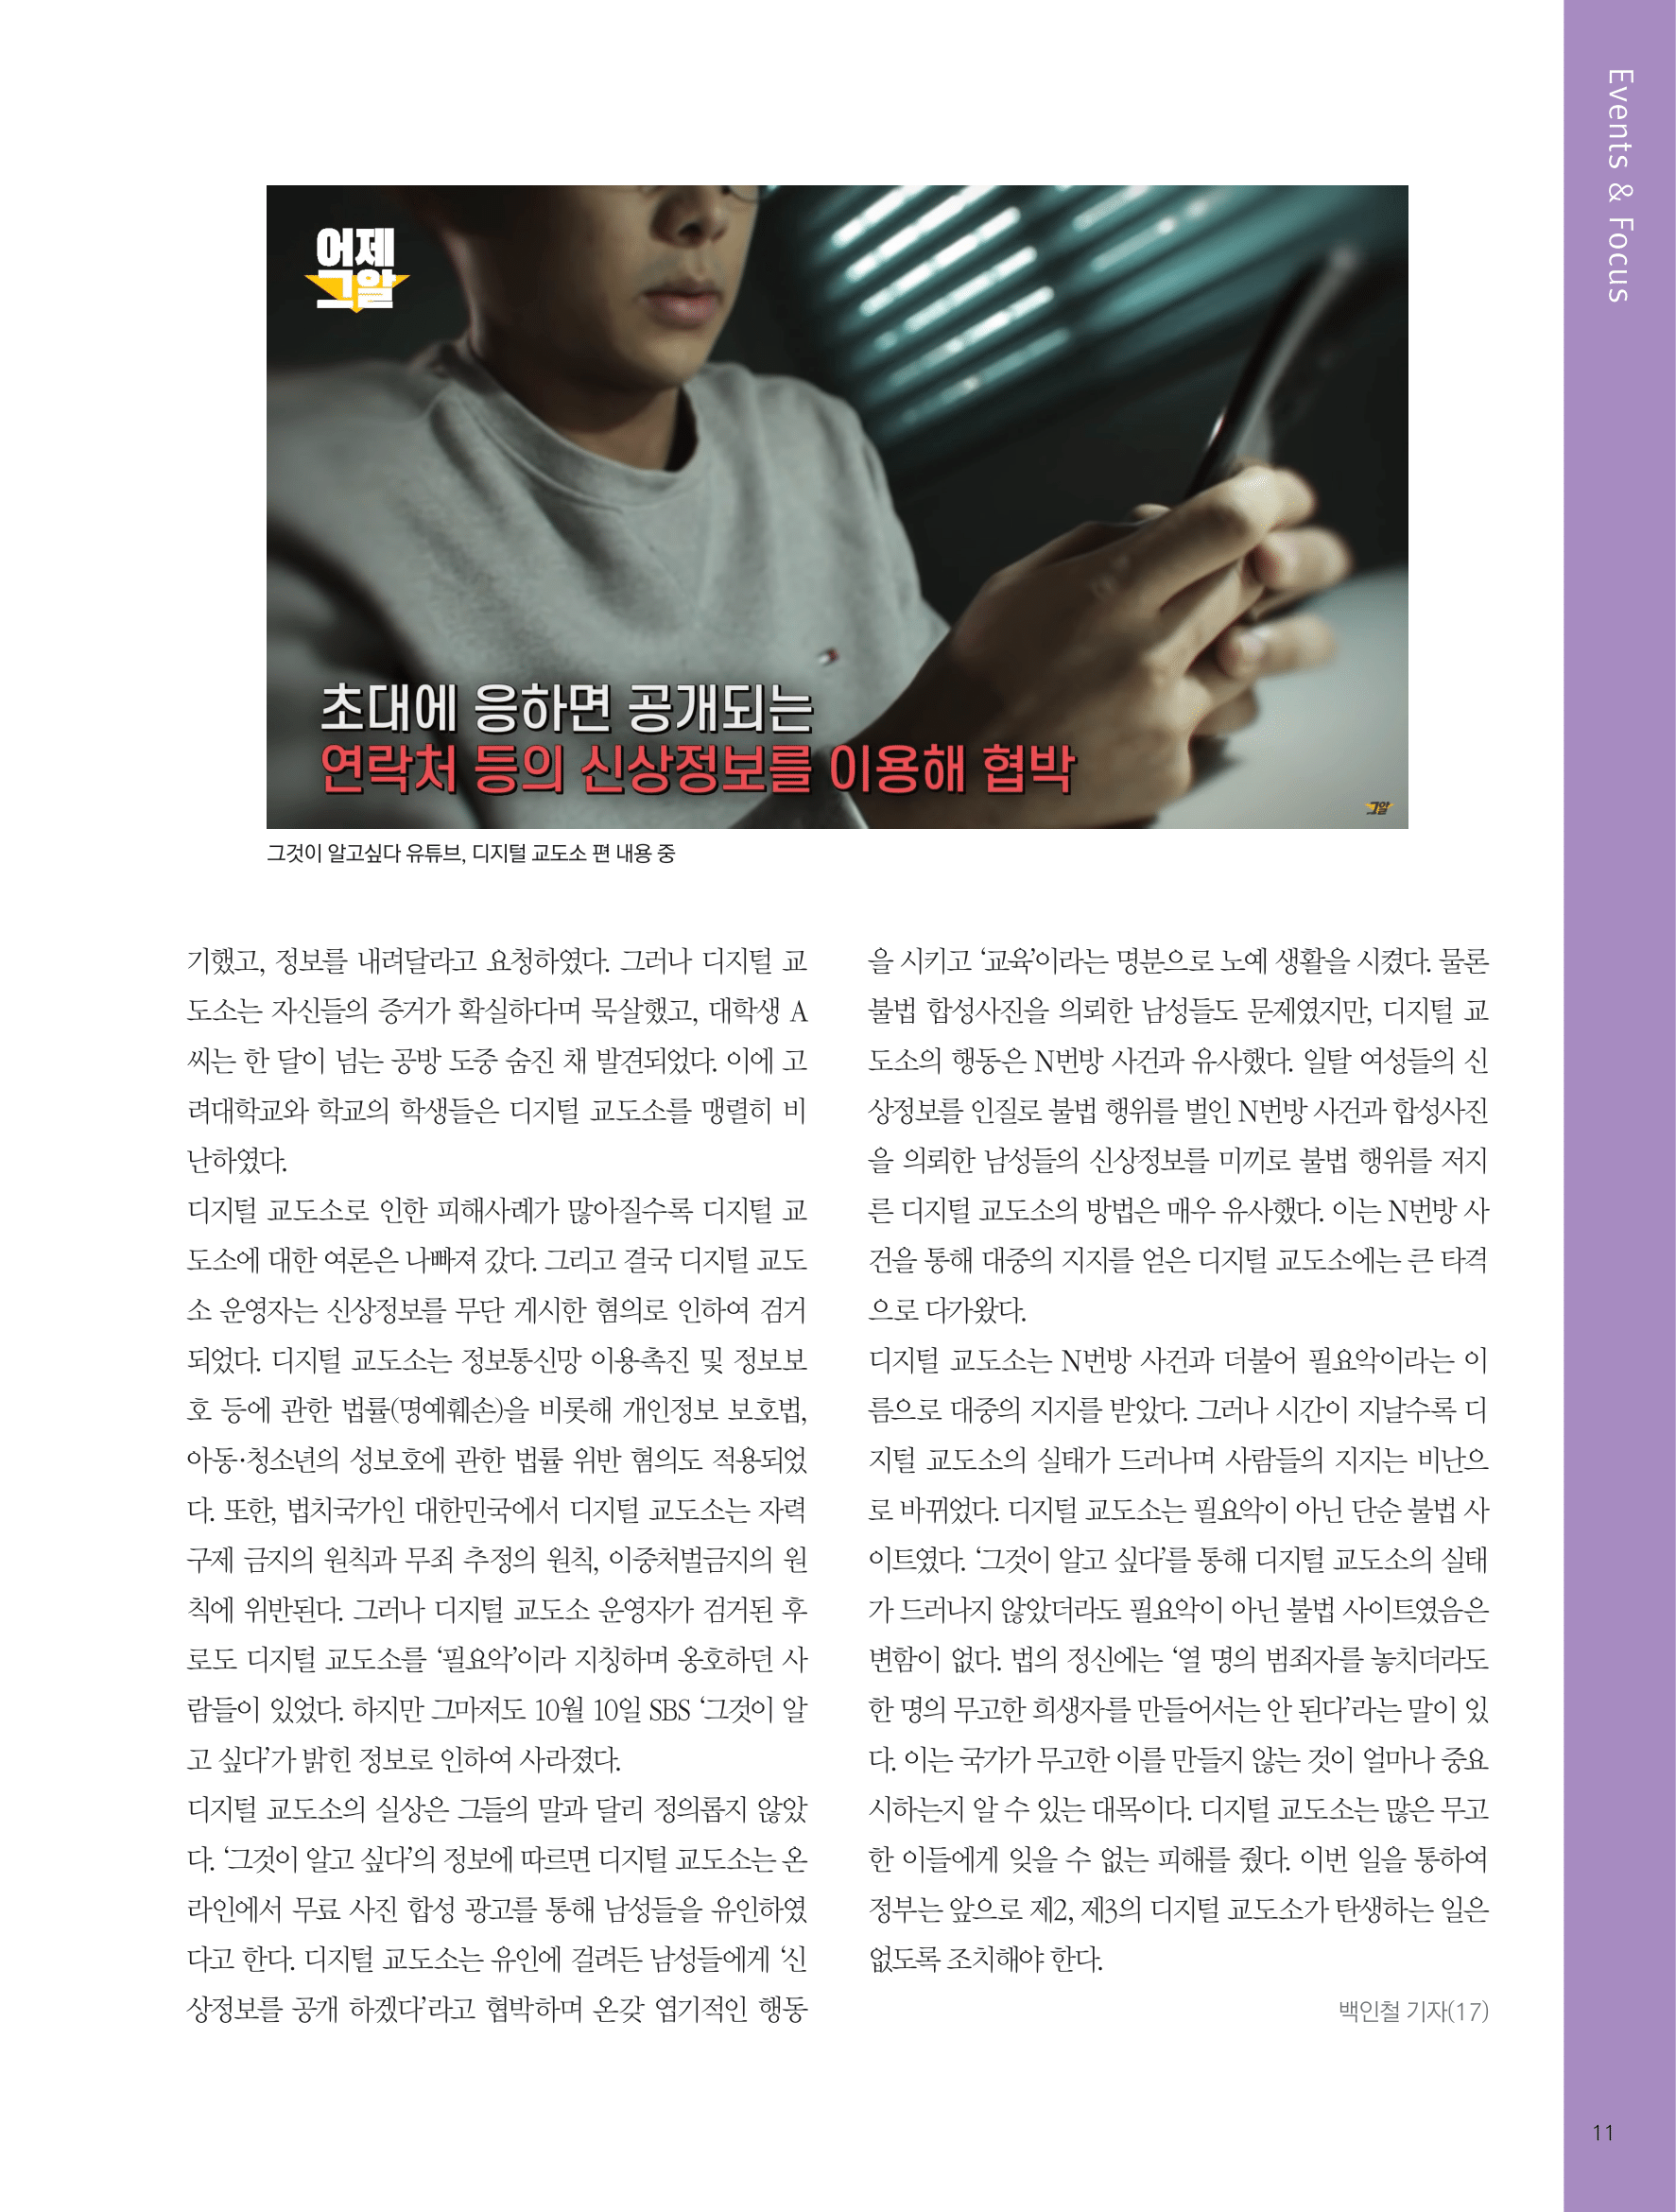 뜻새김 신문 76호 10